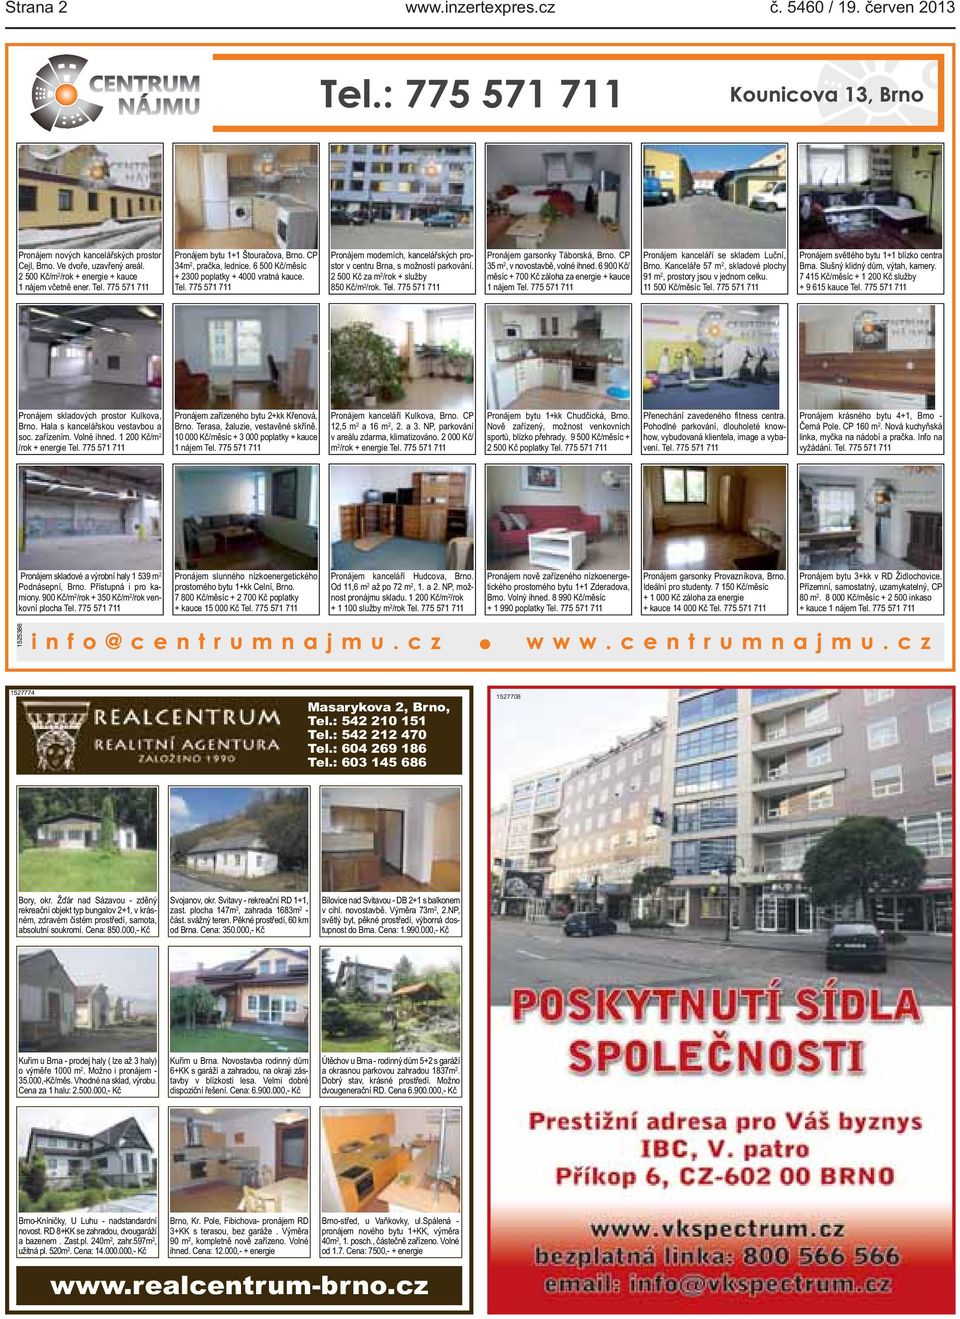 Vyměním obecní byt 2+1(97m2) po celkové rekonstrukci na ul. Černopolní za  obecní byt na vesnici do 30km od Brna. - PDF Stažení zdarma